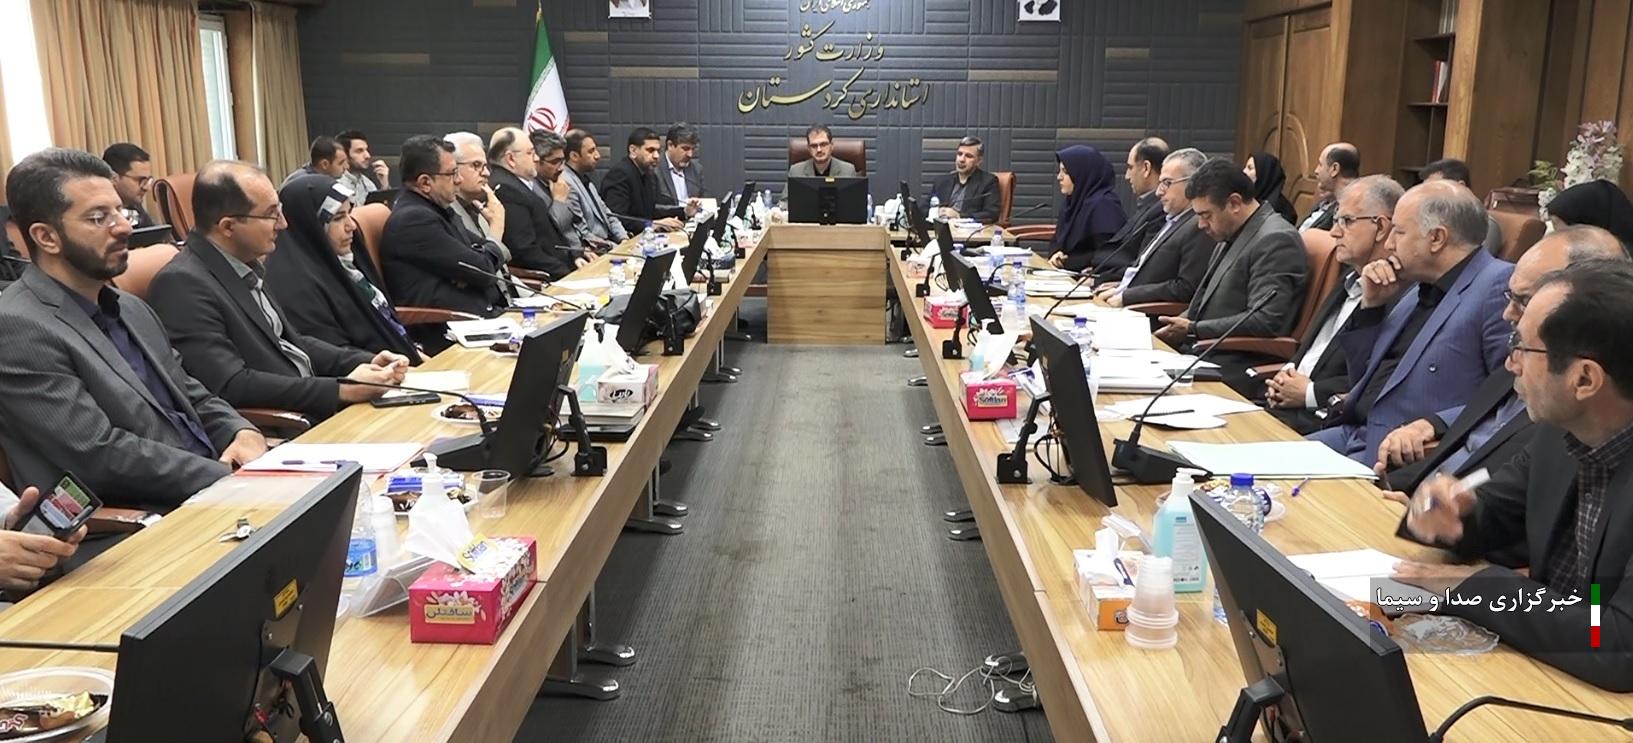 برگزاری جلسه شورای برنامه ریزی وتوسعه با محوریت برداشت گندم در استان کردستان